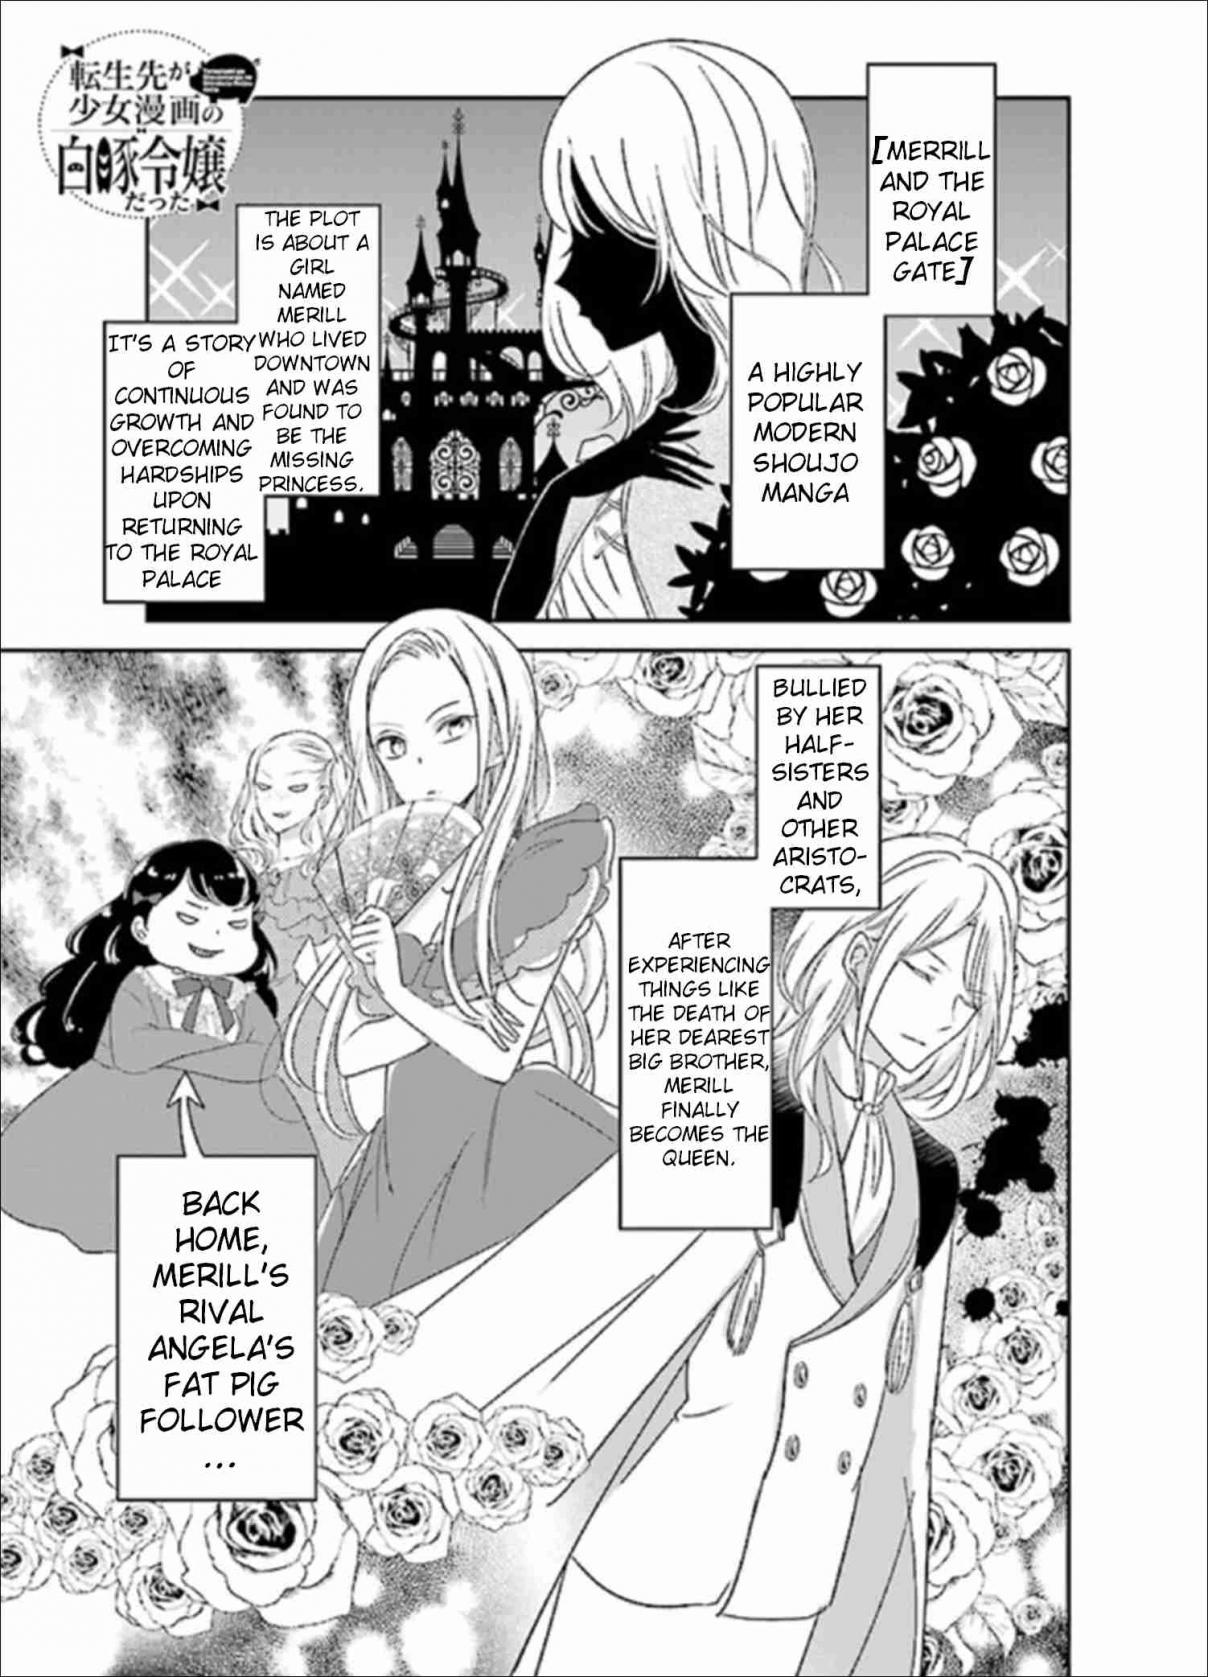 Tensei Saki ga Shoujo Manga no Shiro Buta Reijou datta Vol. 1 Ch. 1 Volume 1 Chapter 1